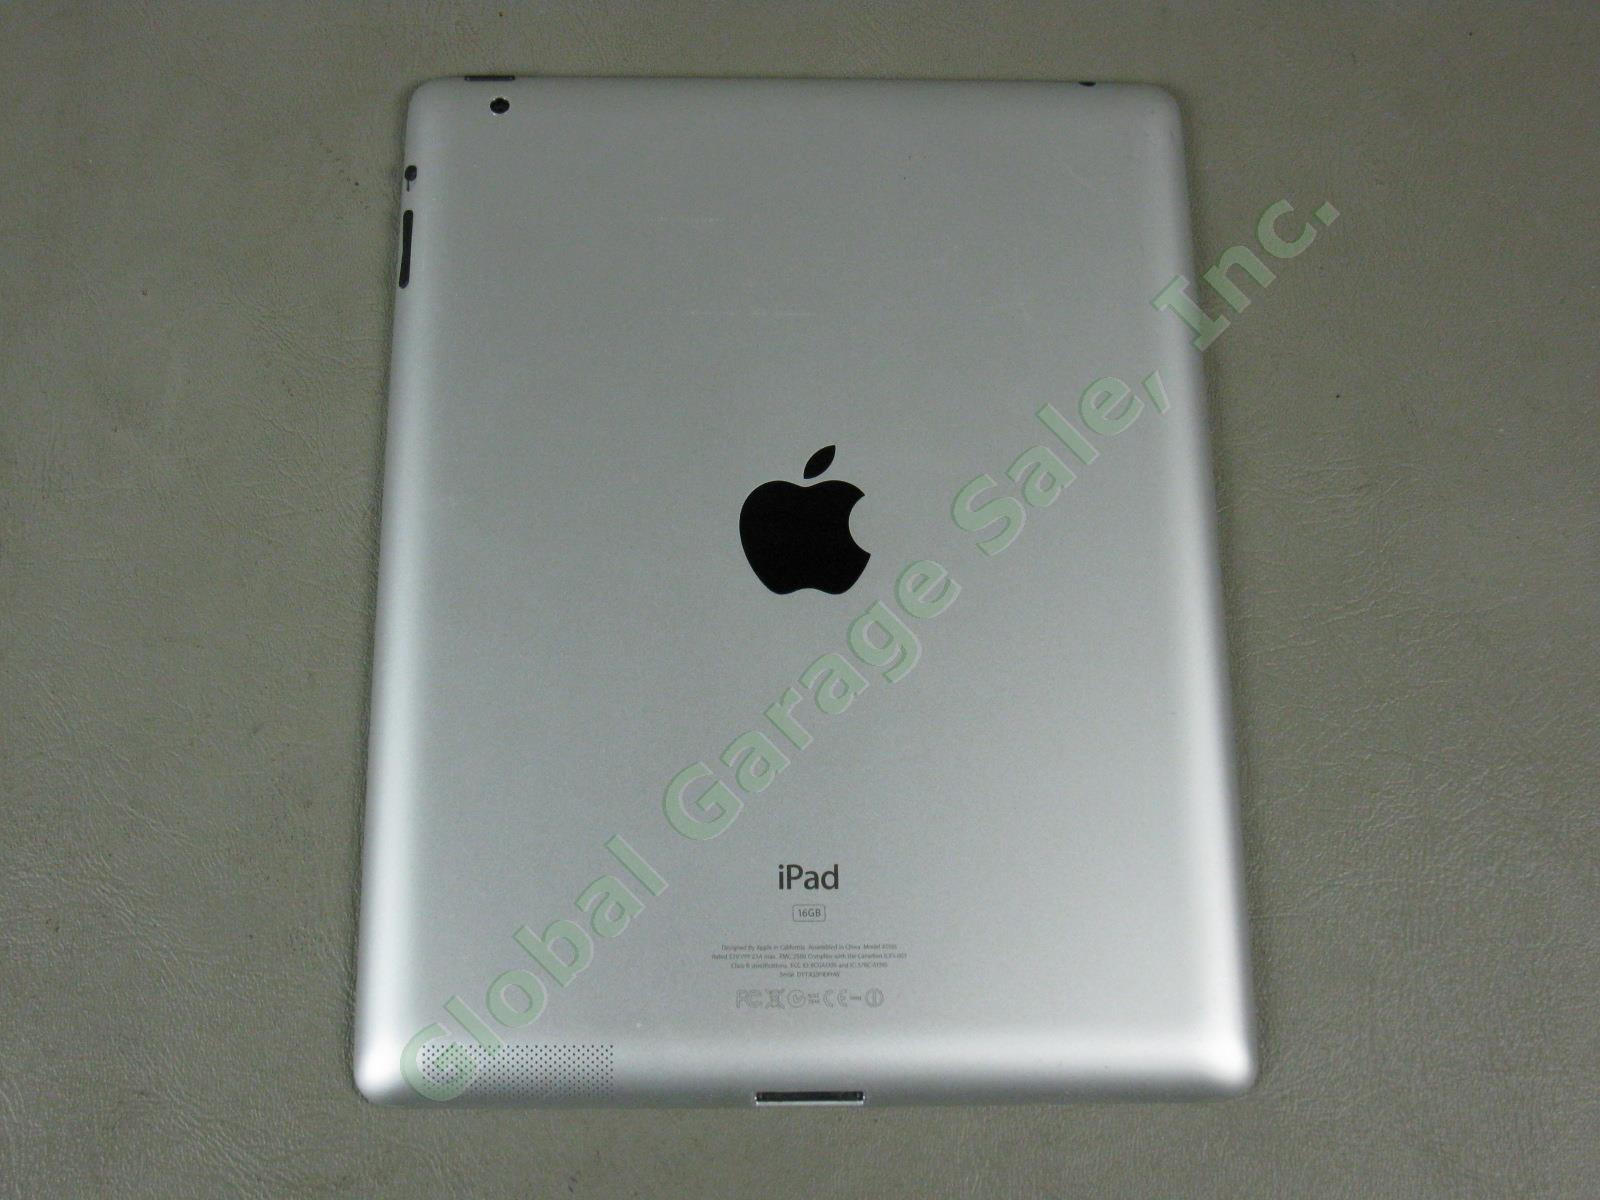 Apple iPad 2 Wifi 16GB Black Tablet Factory Reset MC770LL/A A1395 No Reserve! 3